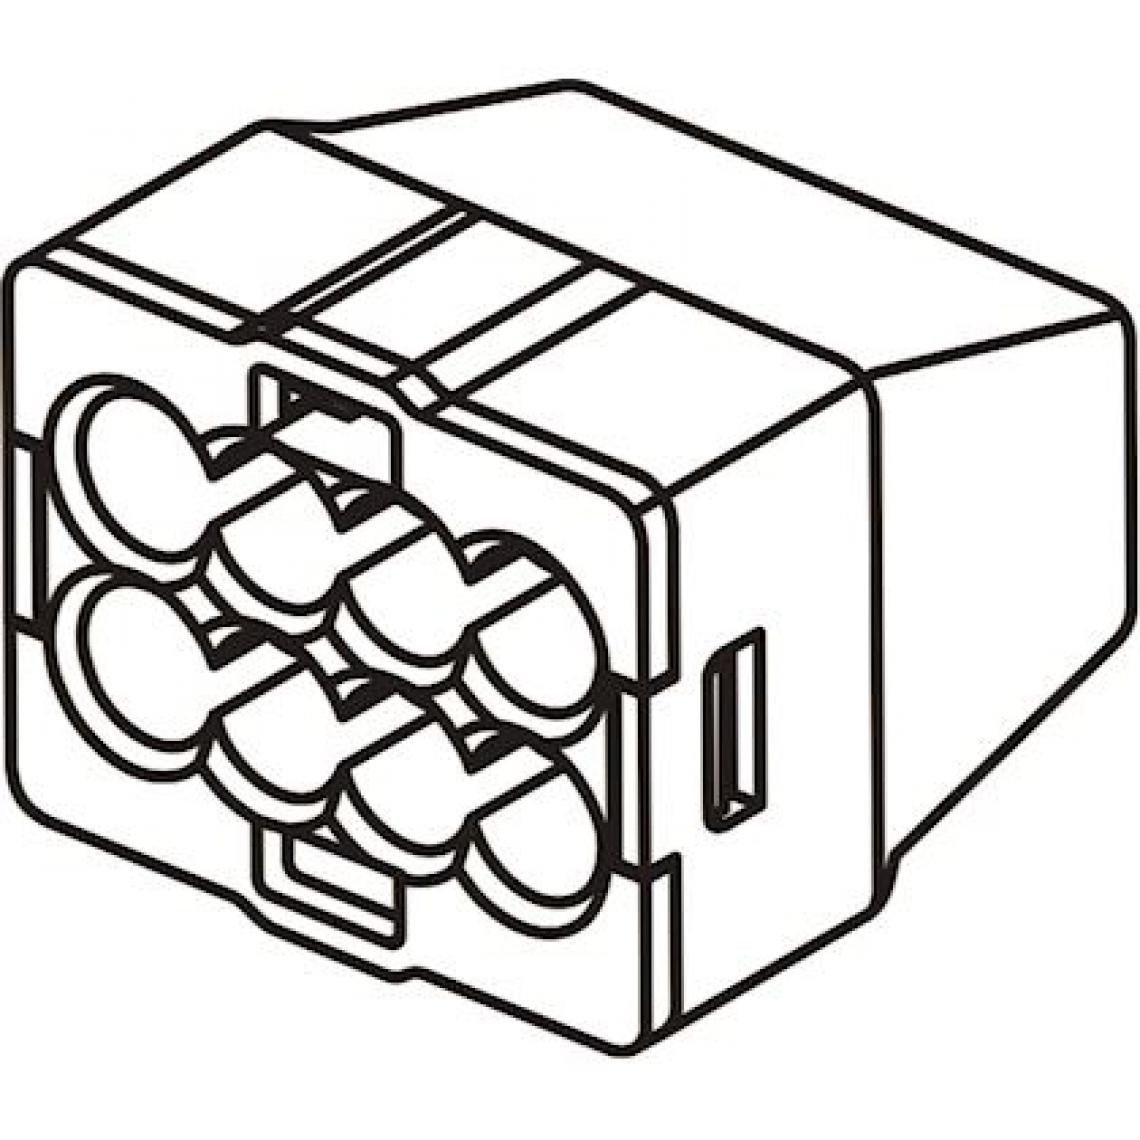 Bizline - borne de connexion - transparente - 2 entrées - 0.5 à 2.5 mm2 - boite de 1000 - bizline 103422 - Accessoires de câblage